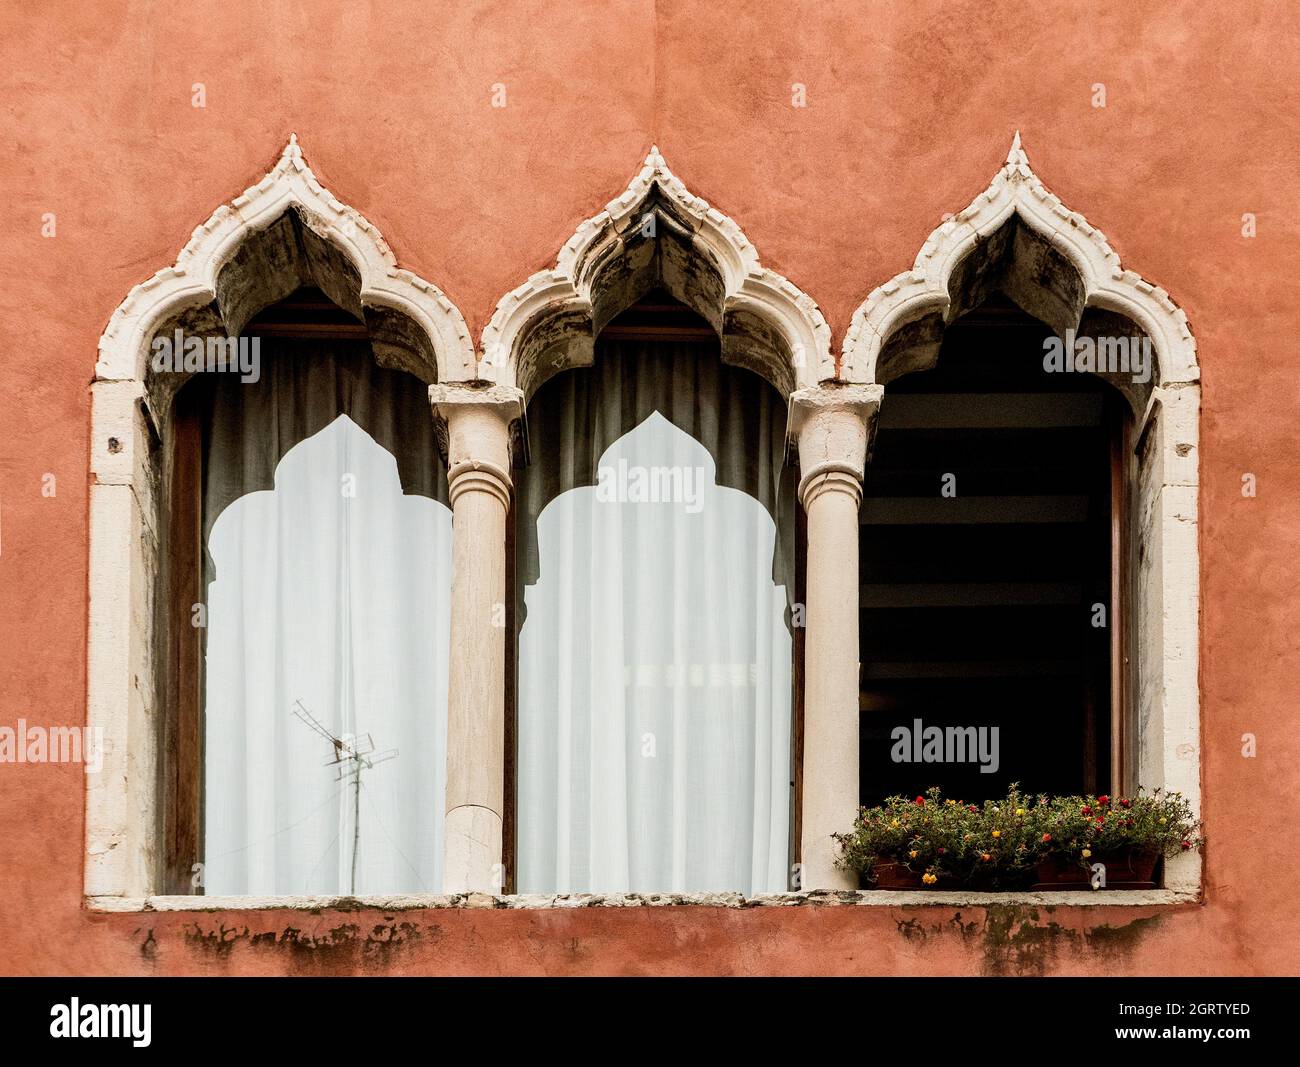 Ein typisches dreibogige Fenster (oder drei-Licht-Fenster) eines Gebäudes, an einer roten Wand, in einer Straße von Venedig, Venetien, Italien, Europa Stockfoto